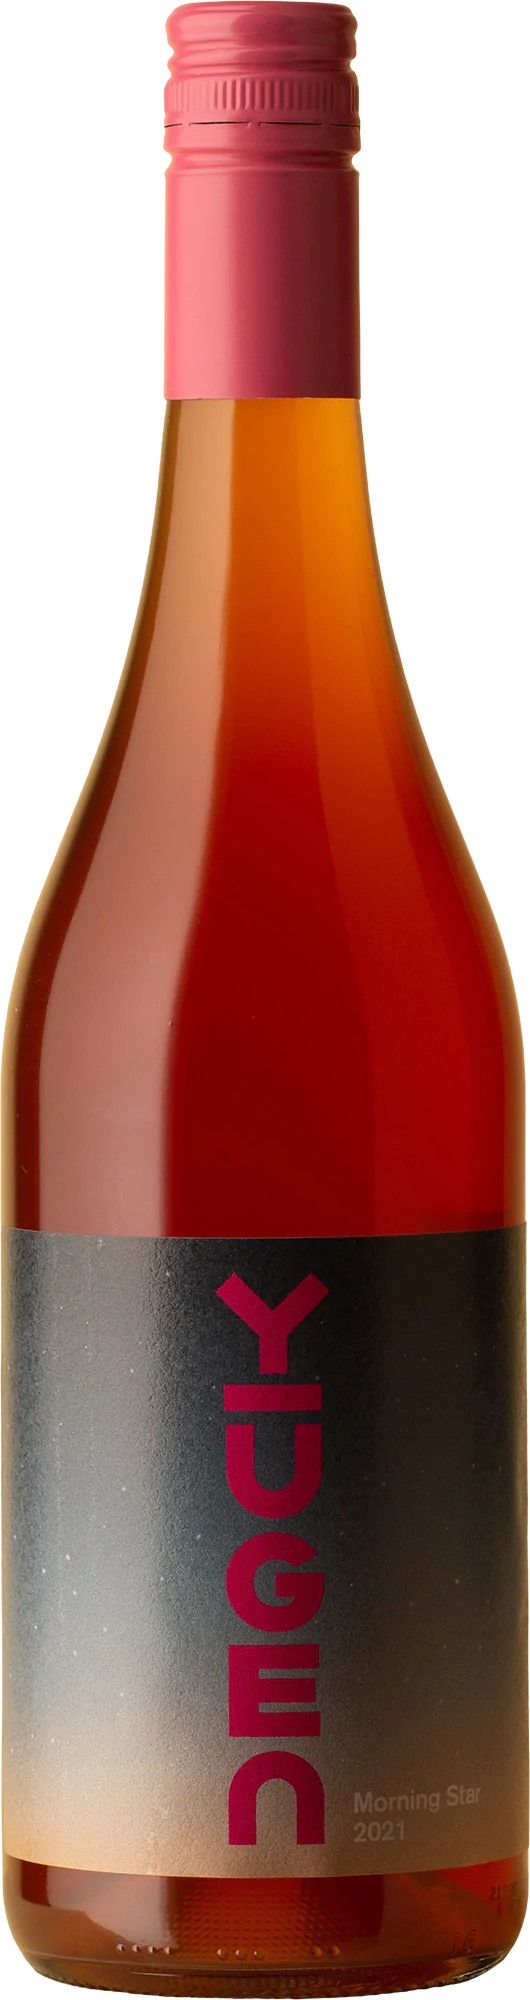 Yūgen - Morning Star Pinot Gris 2021 Rosé